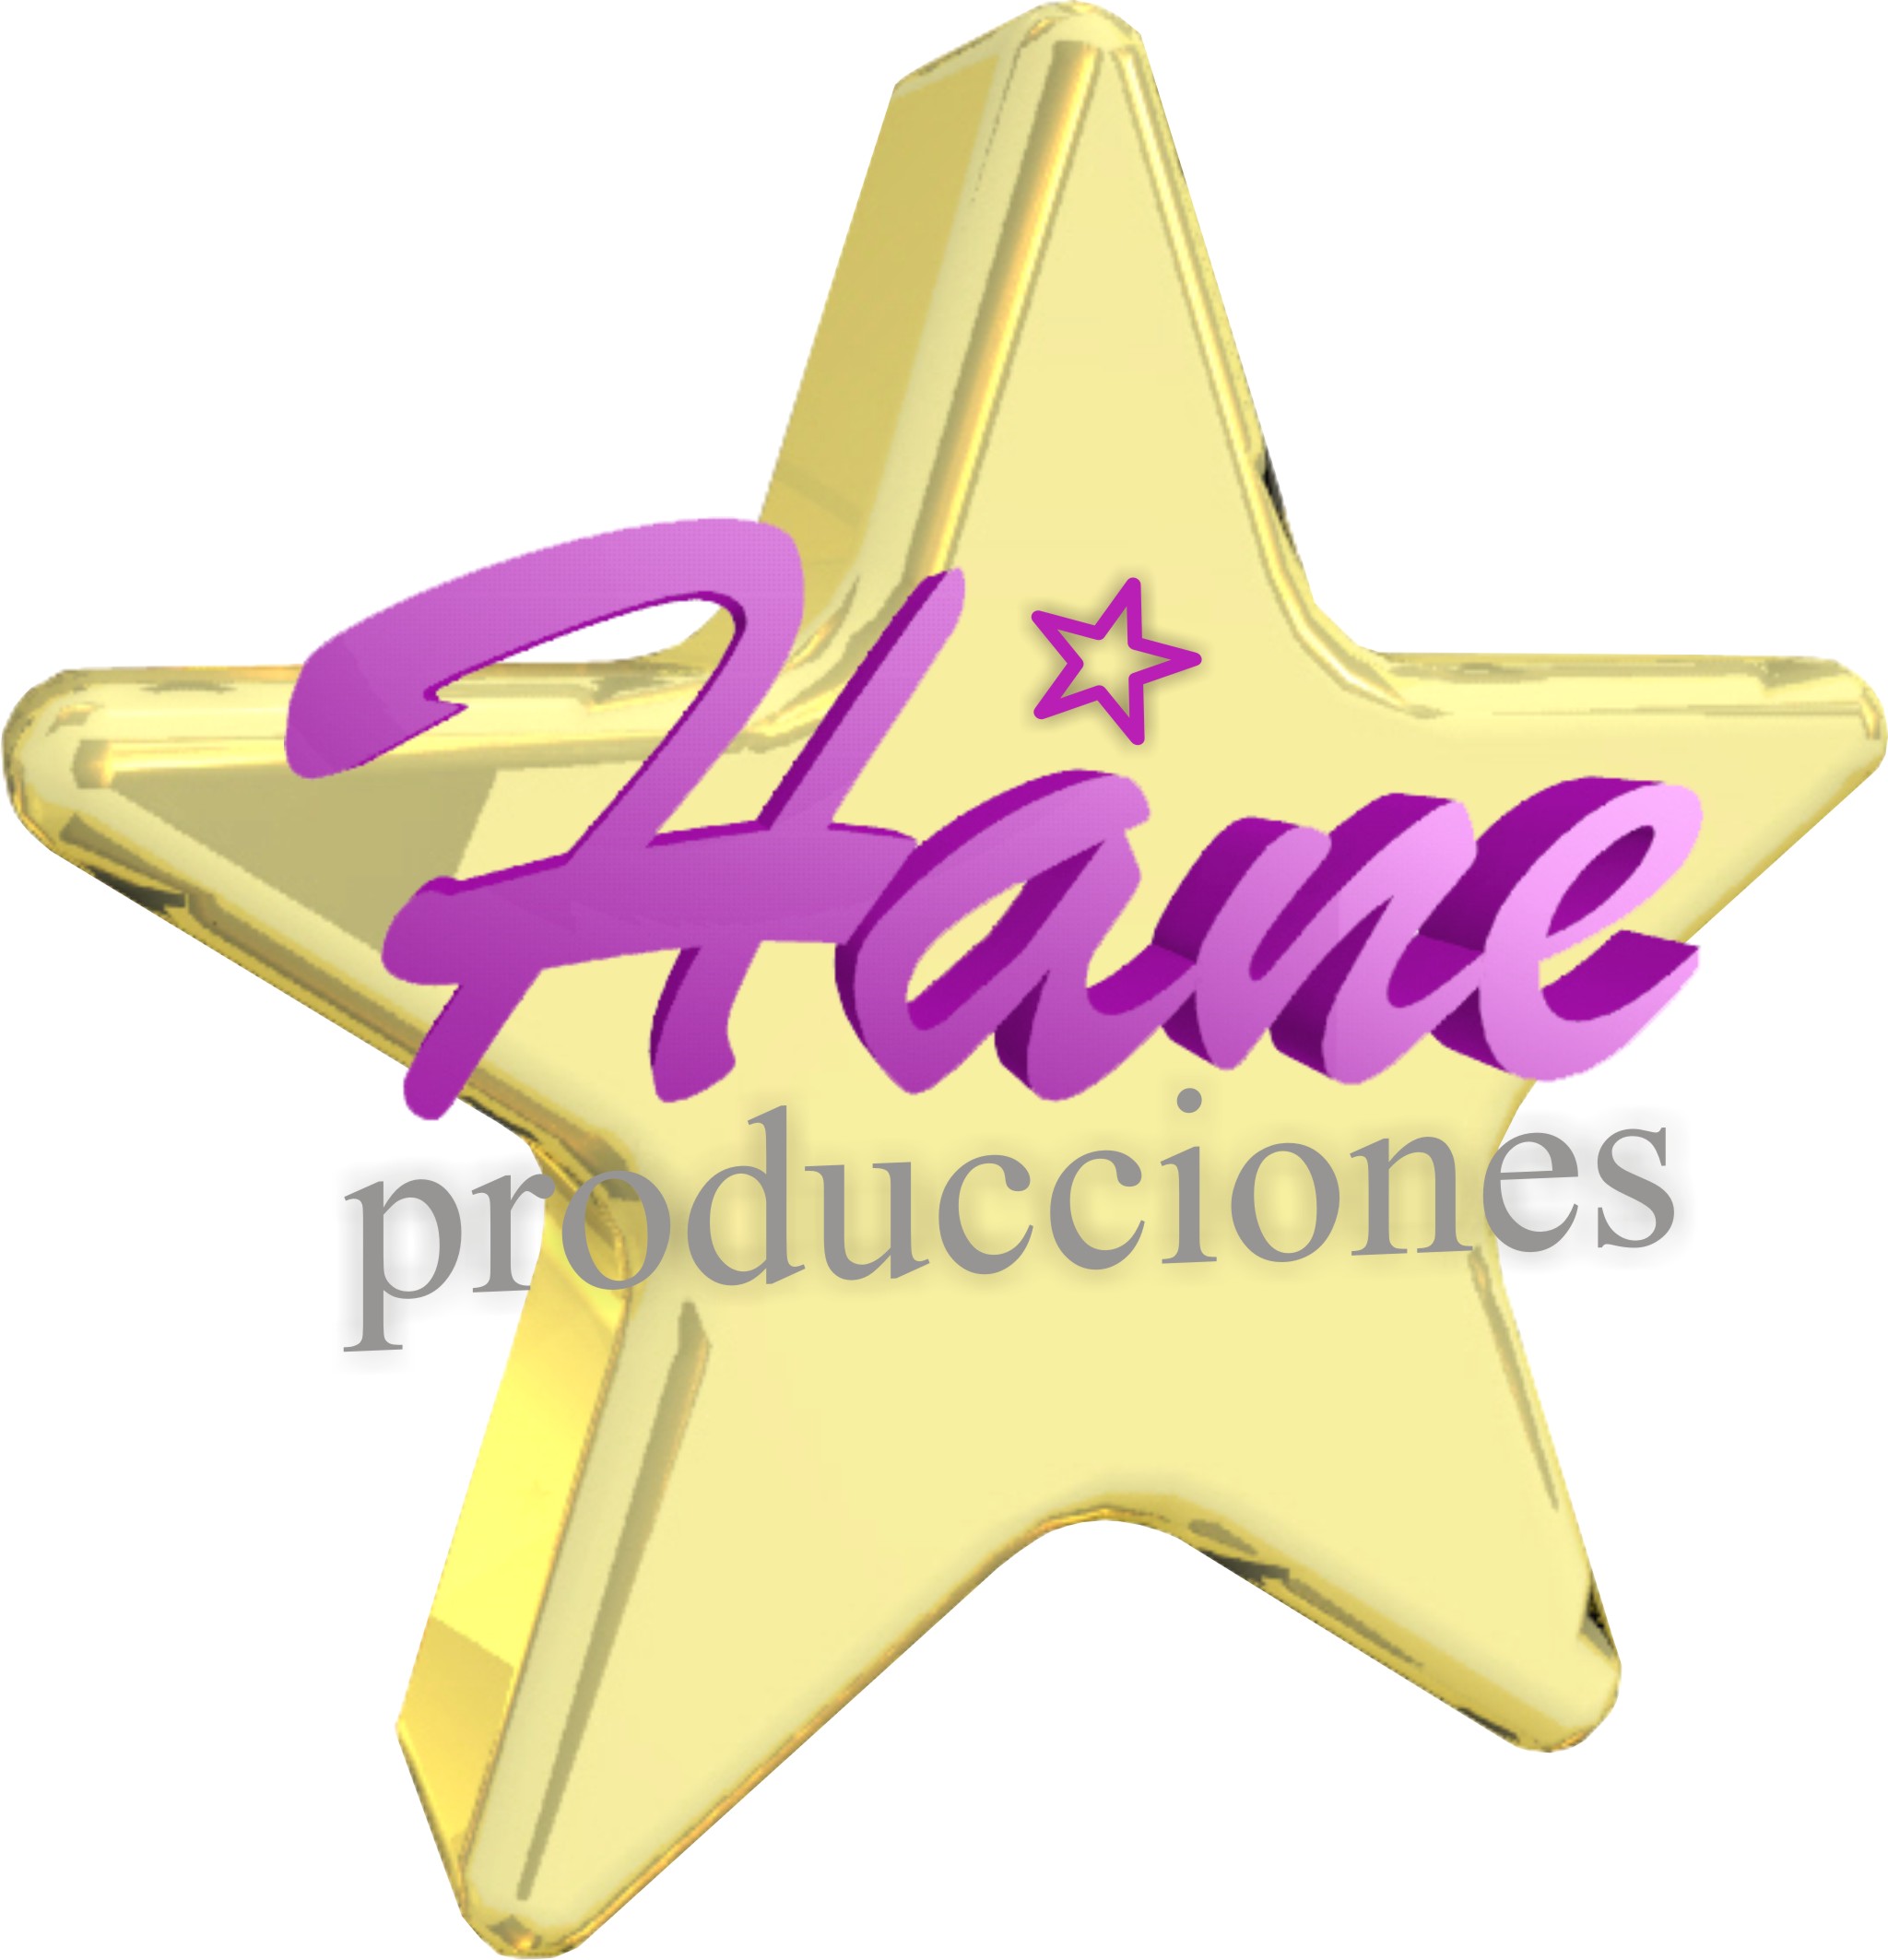 hane_producciones